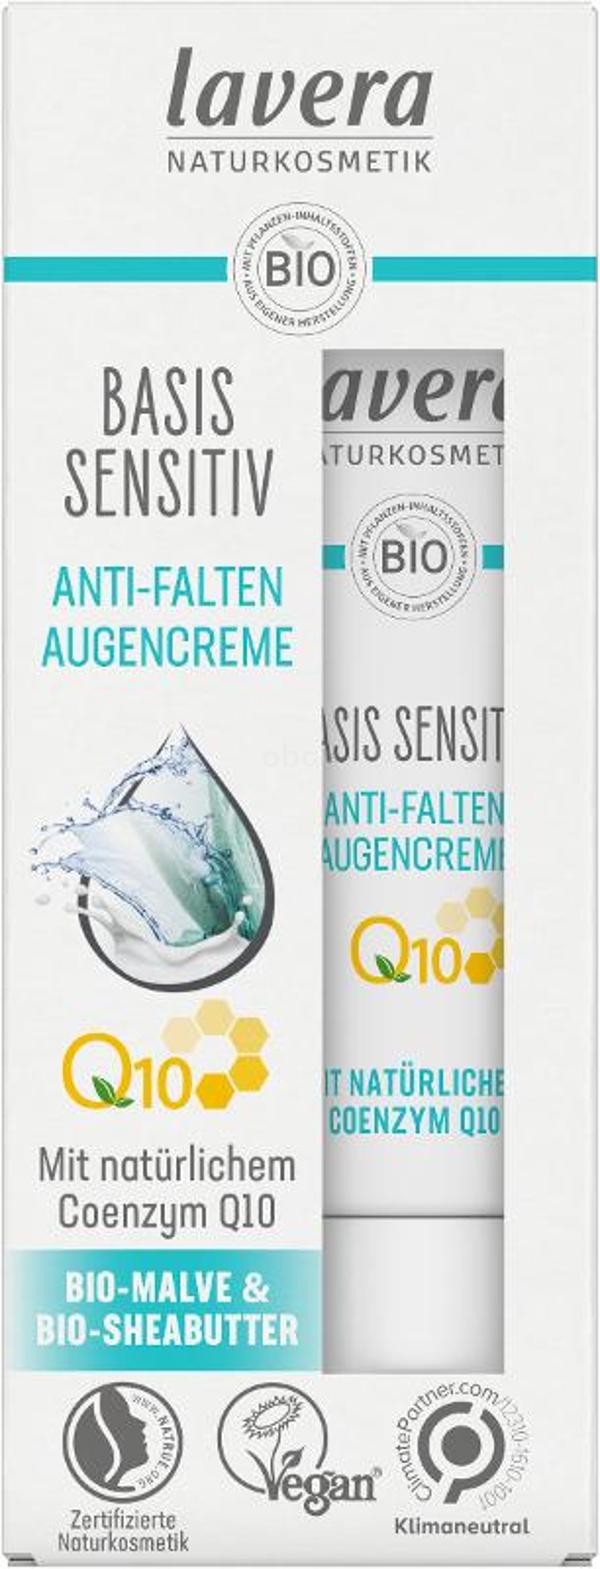 Produktfoto zu Basis Sensitiv Anti-Falten Augencreme Q10, 15 ml